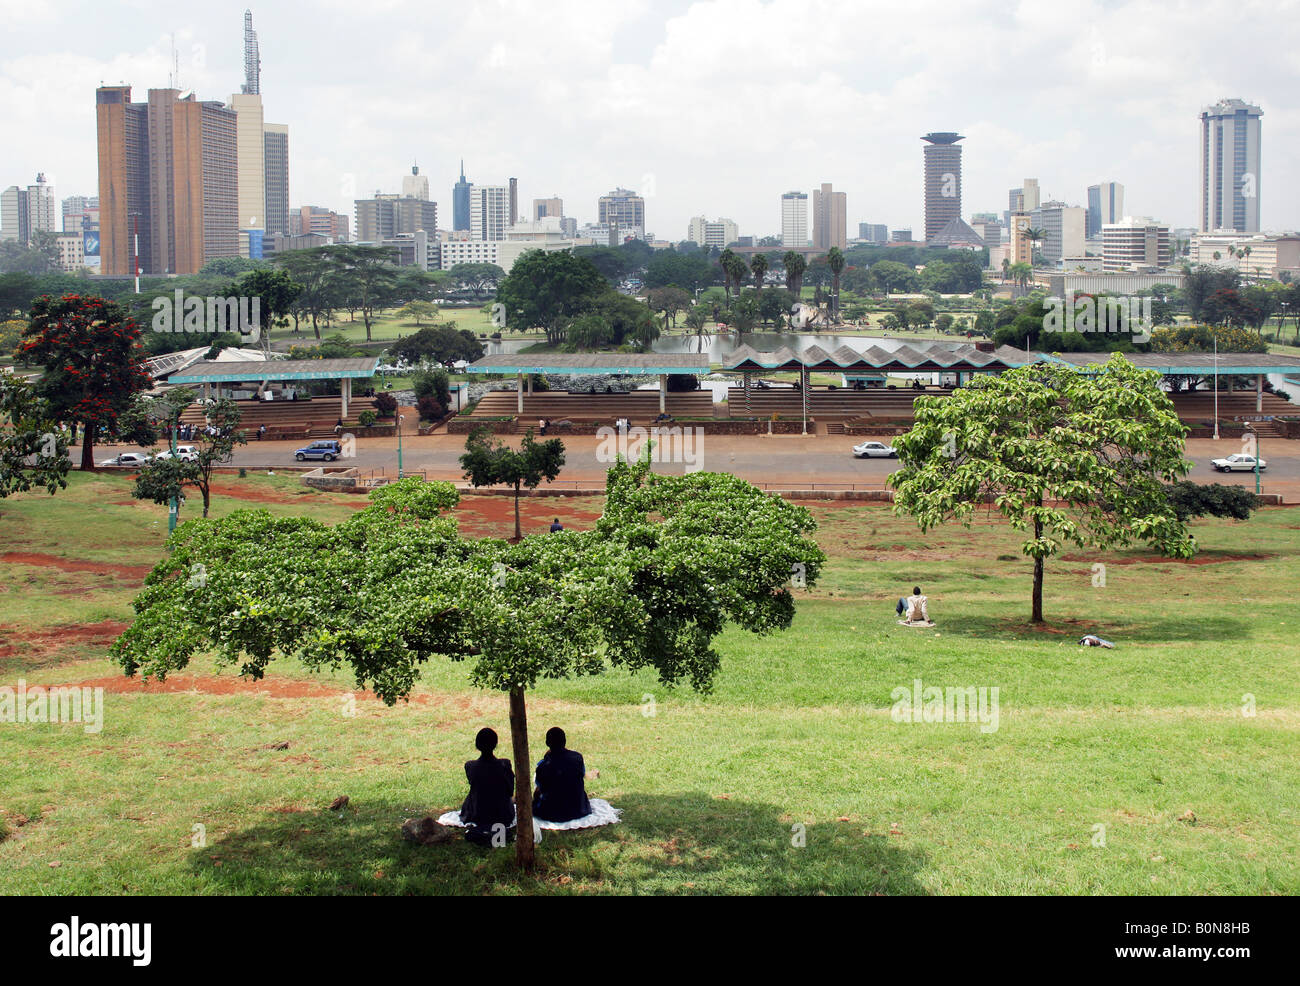 Kenya: view from Uhuru Park to the skyline of Nairobi Stock Photo